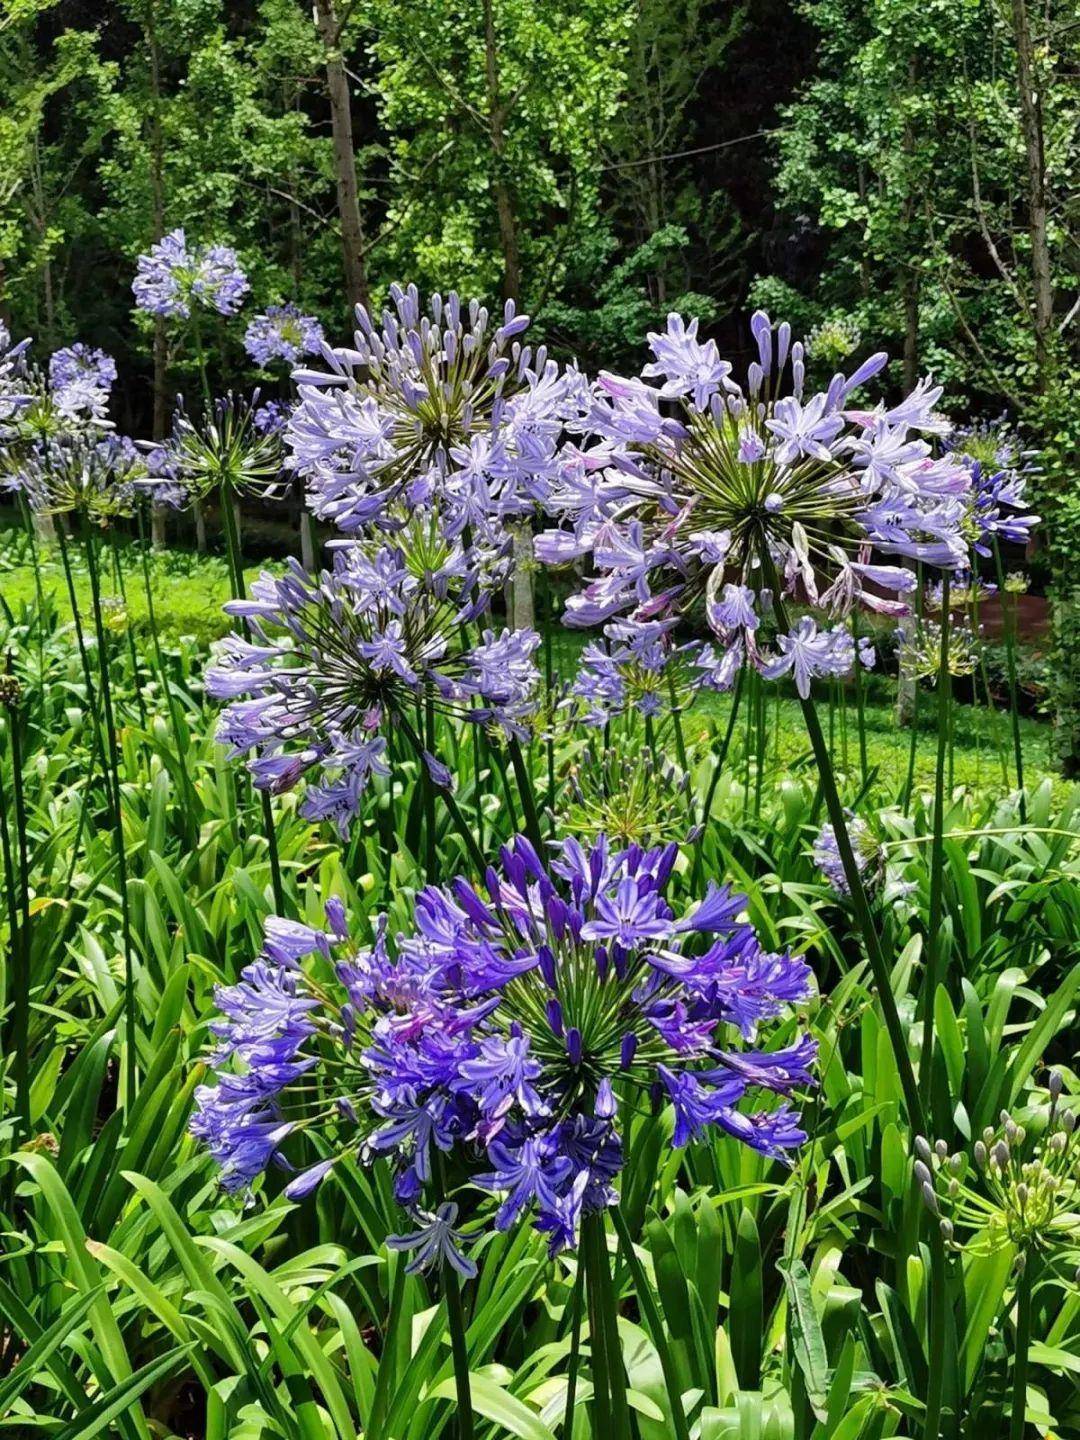 1种 君子兰 个头能窜1米多 开花是梦幻蓝色 特迷人 花盆